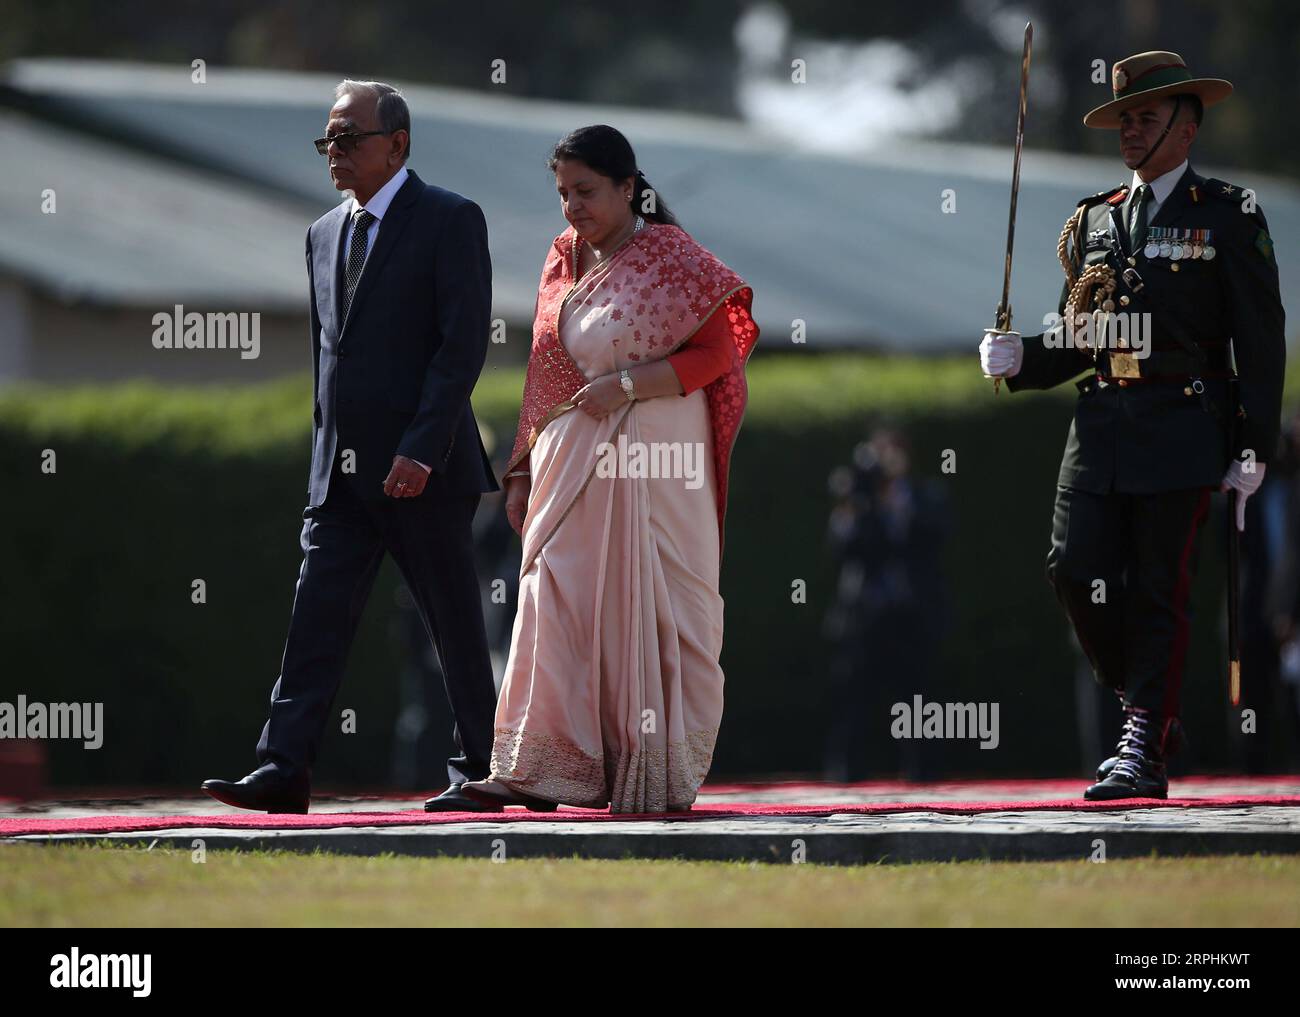 191112 -- KATMANDOU, le 12 novembre 2019 -- le président du Bangladesh, M. Abdul Hamid, et le président népalais, Bidhya Devi Bhandari, examinent la garde d'honneur à l'aéroport international Tribhuvan de Katmandou, capitale du Népal, le 12 novembre 2019. Le président du Bangladesh, M. Abdul Hamid, est arrivé mardi à Katmandou pour une visite officielle de bonne volonté de quatre jours. Str/Xinhua NÉPAL-KATMANDOU-PRÉSIDENT DU BANGLADESH- VISITE sunilxsharma PUBLICATIONxNOTxINxCHN Banque D'Images